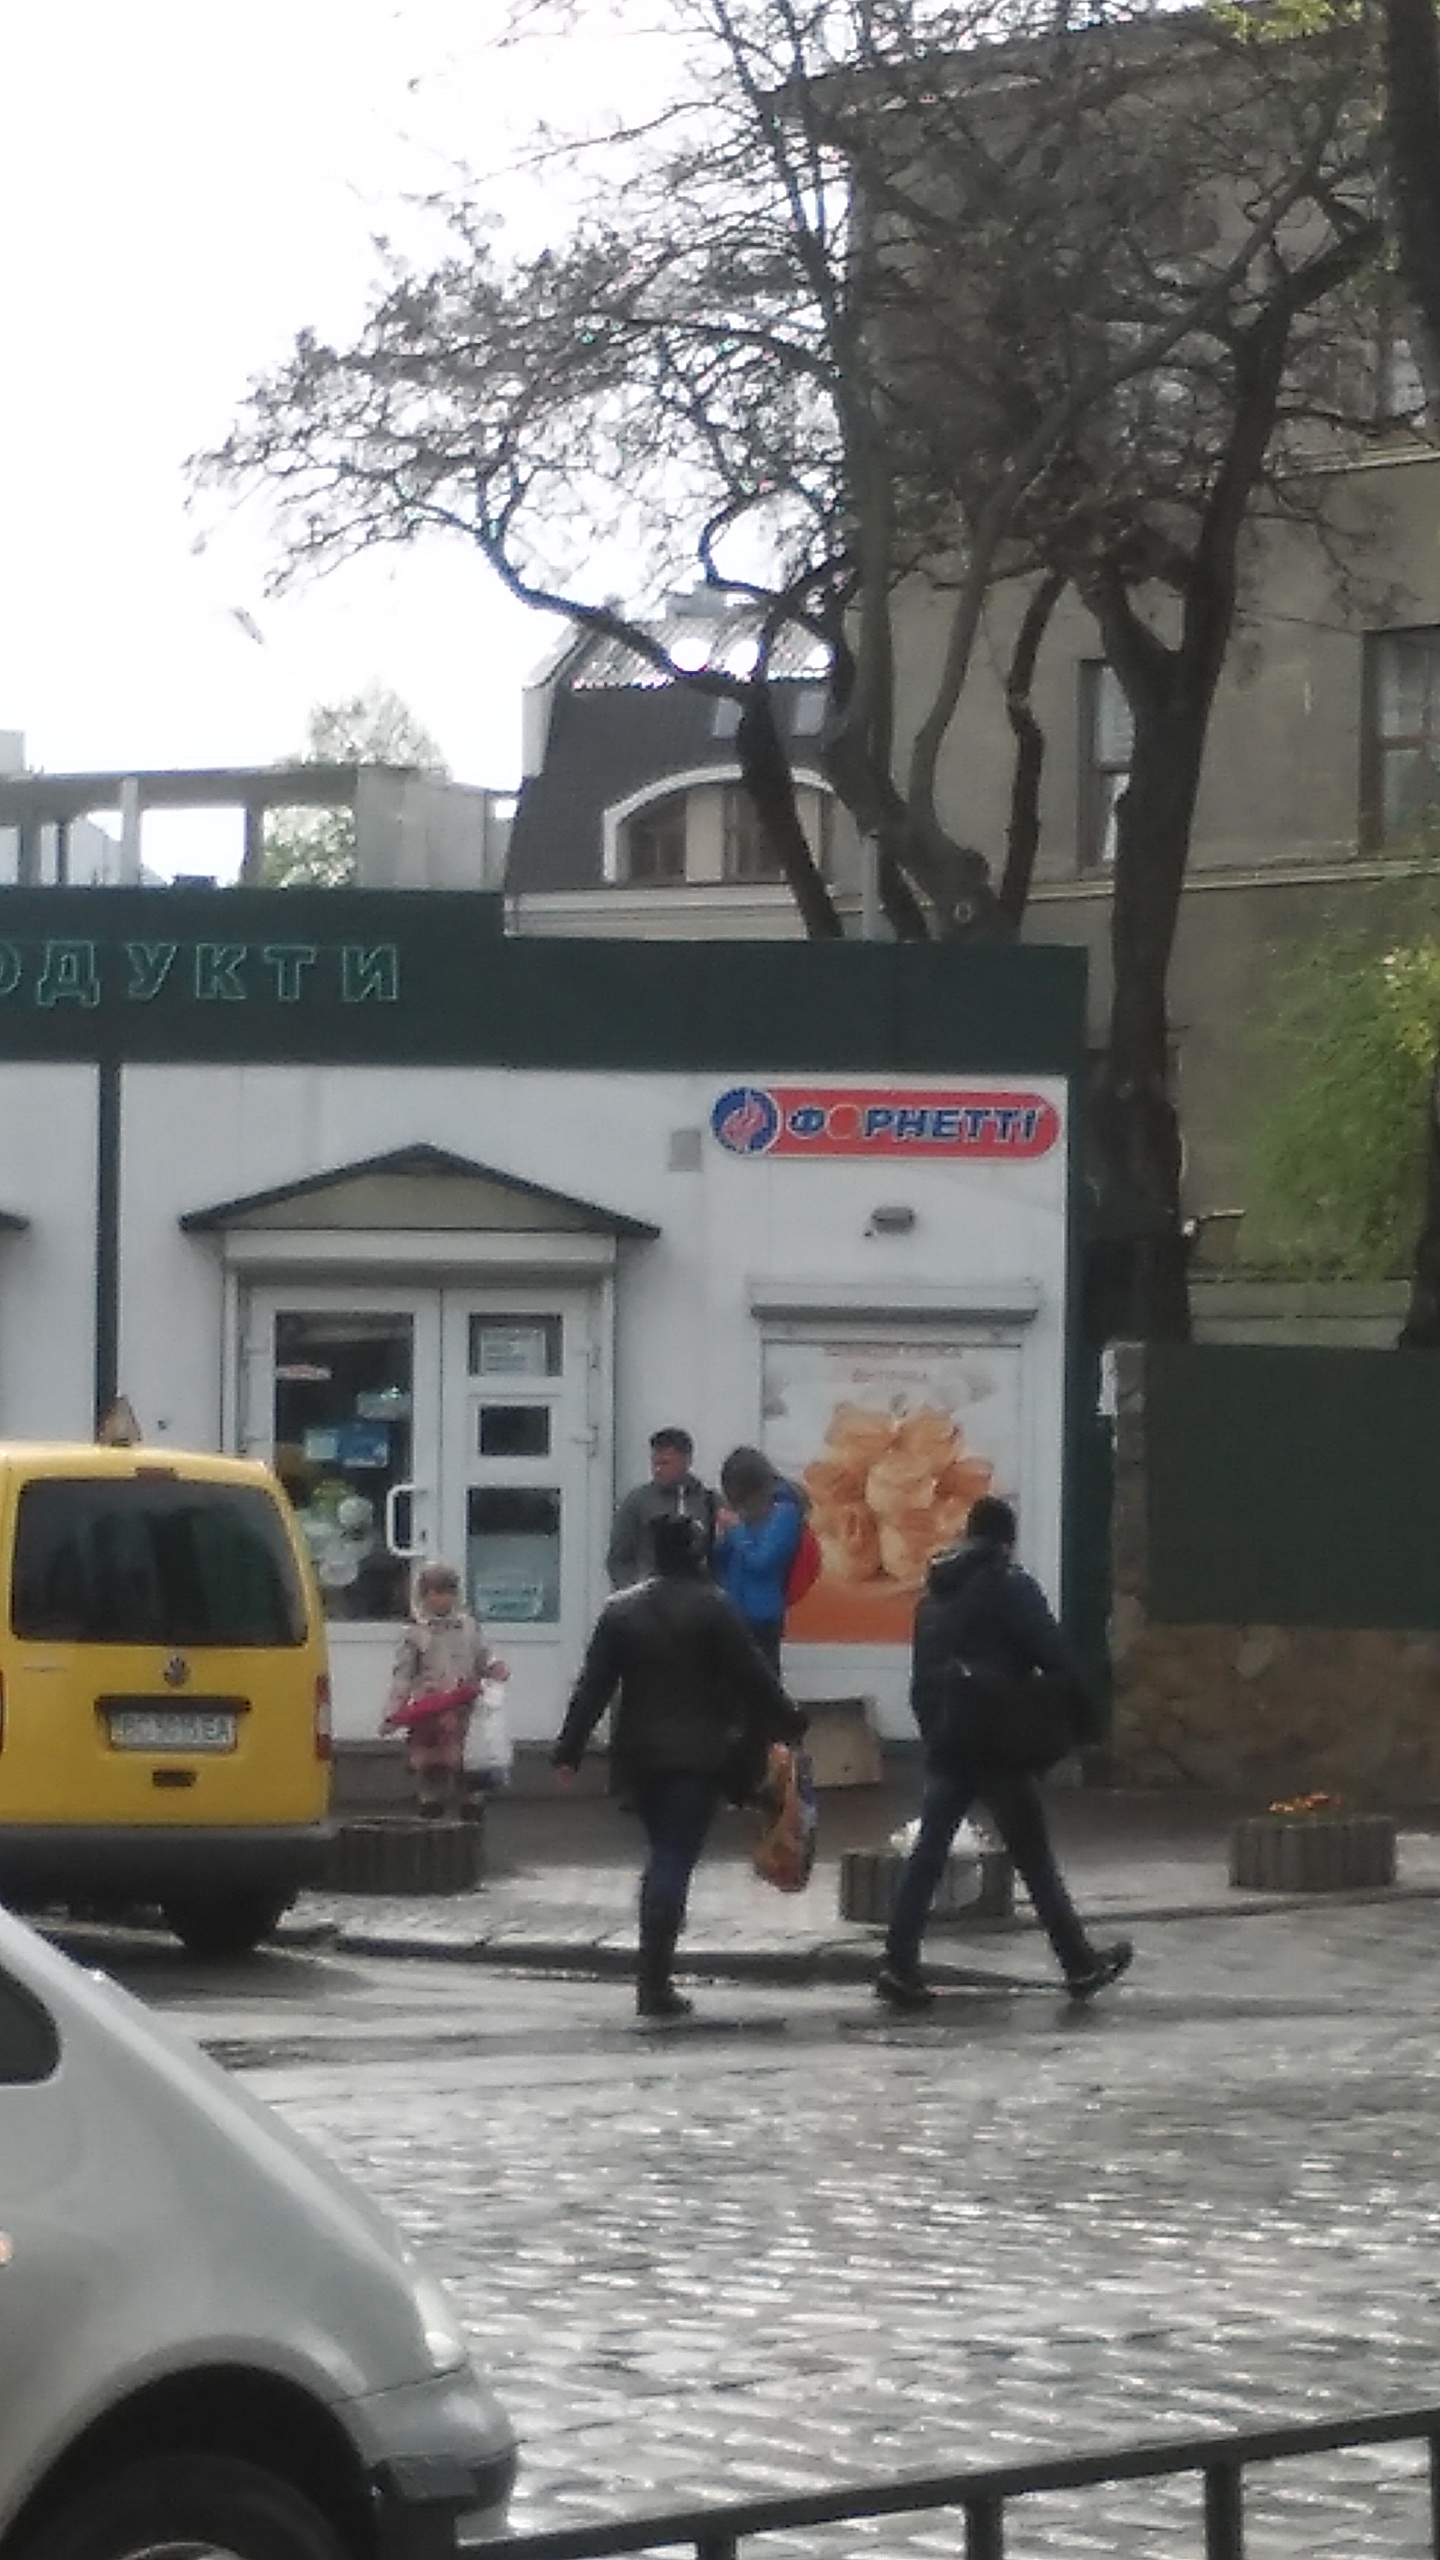 A Fornetti lvivi üzlete. A magyar franchise 2004-től van jelen Ukrajnában.